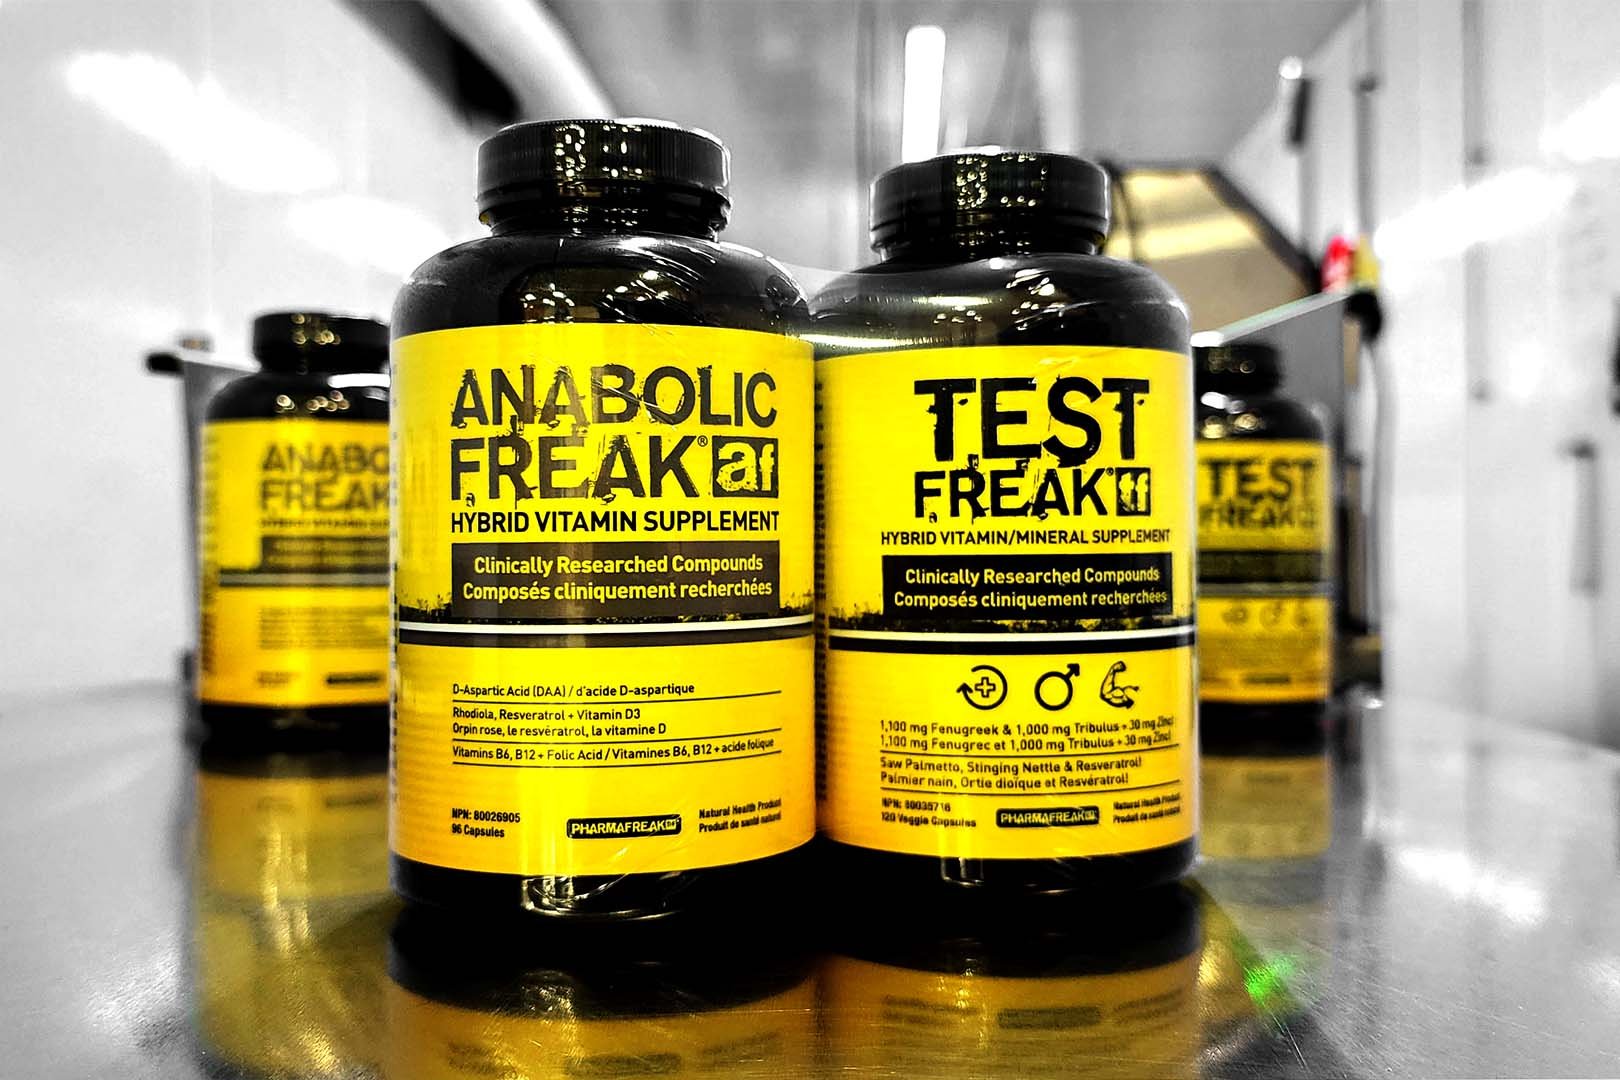 Pharmafreak Anabolic And Test Freak Bundle